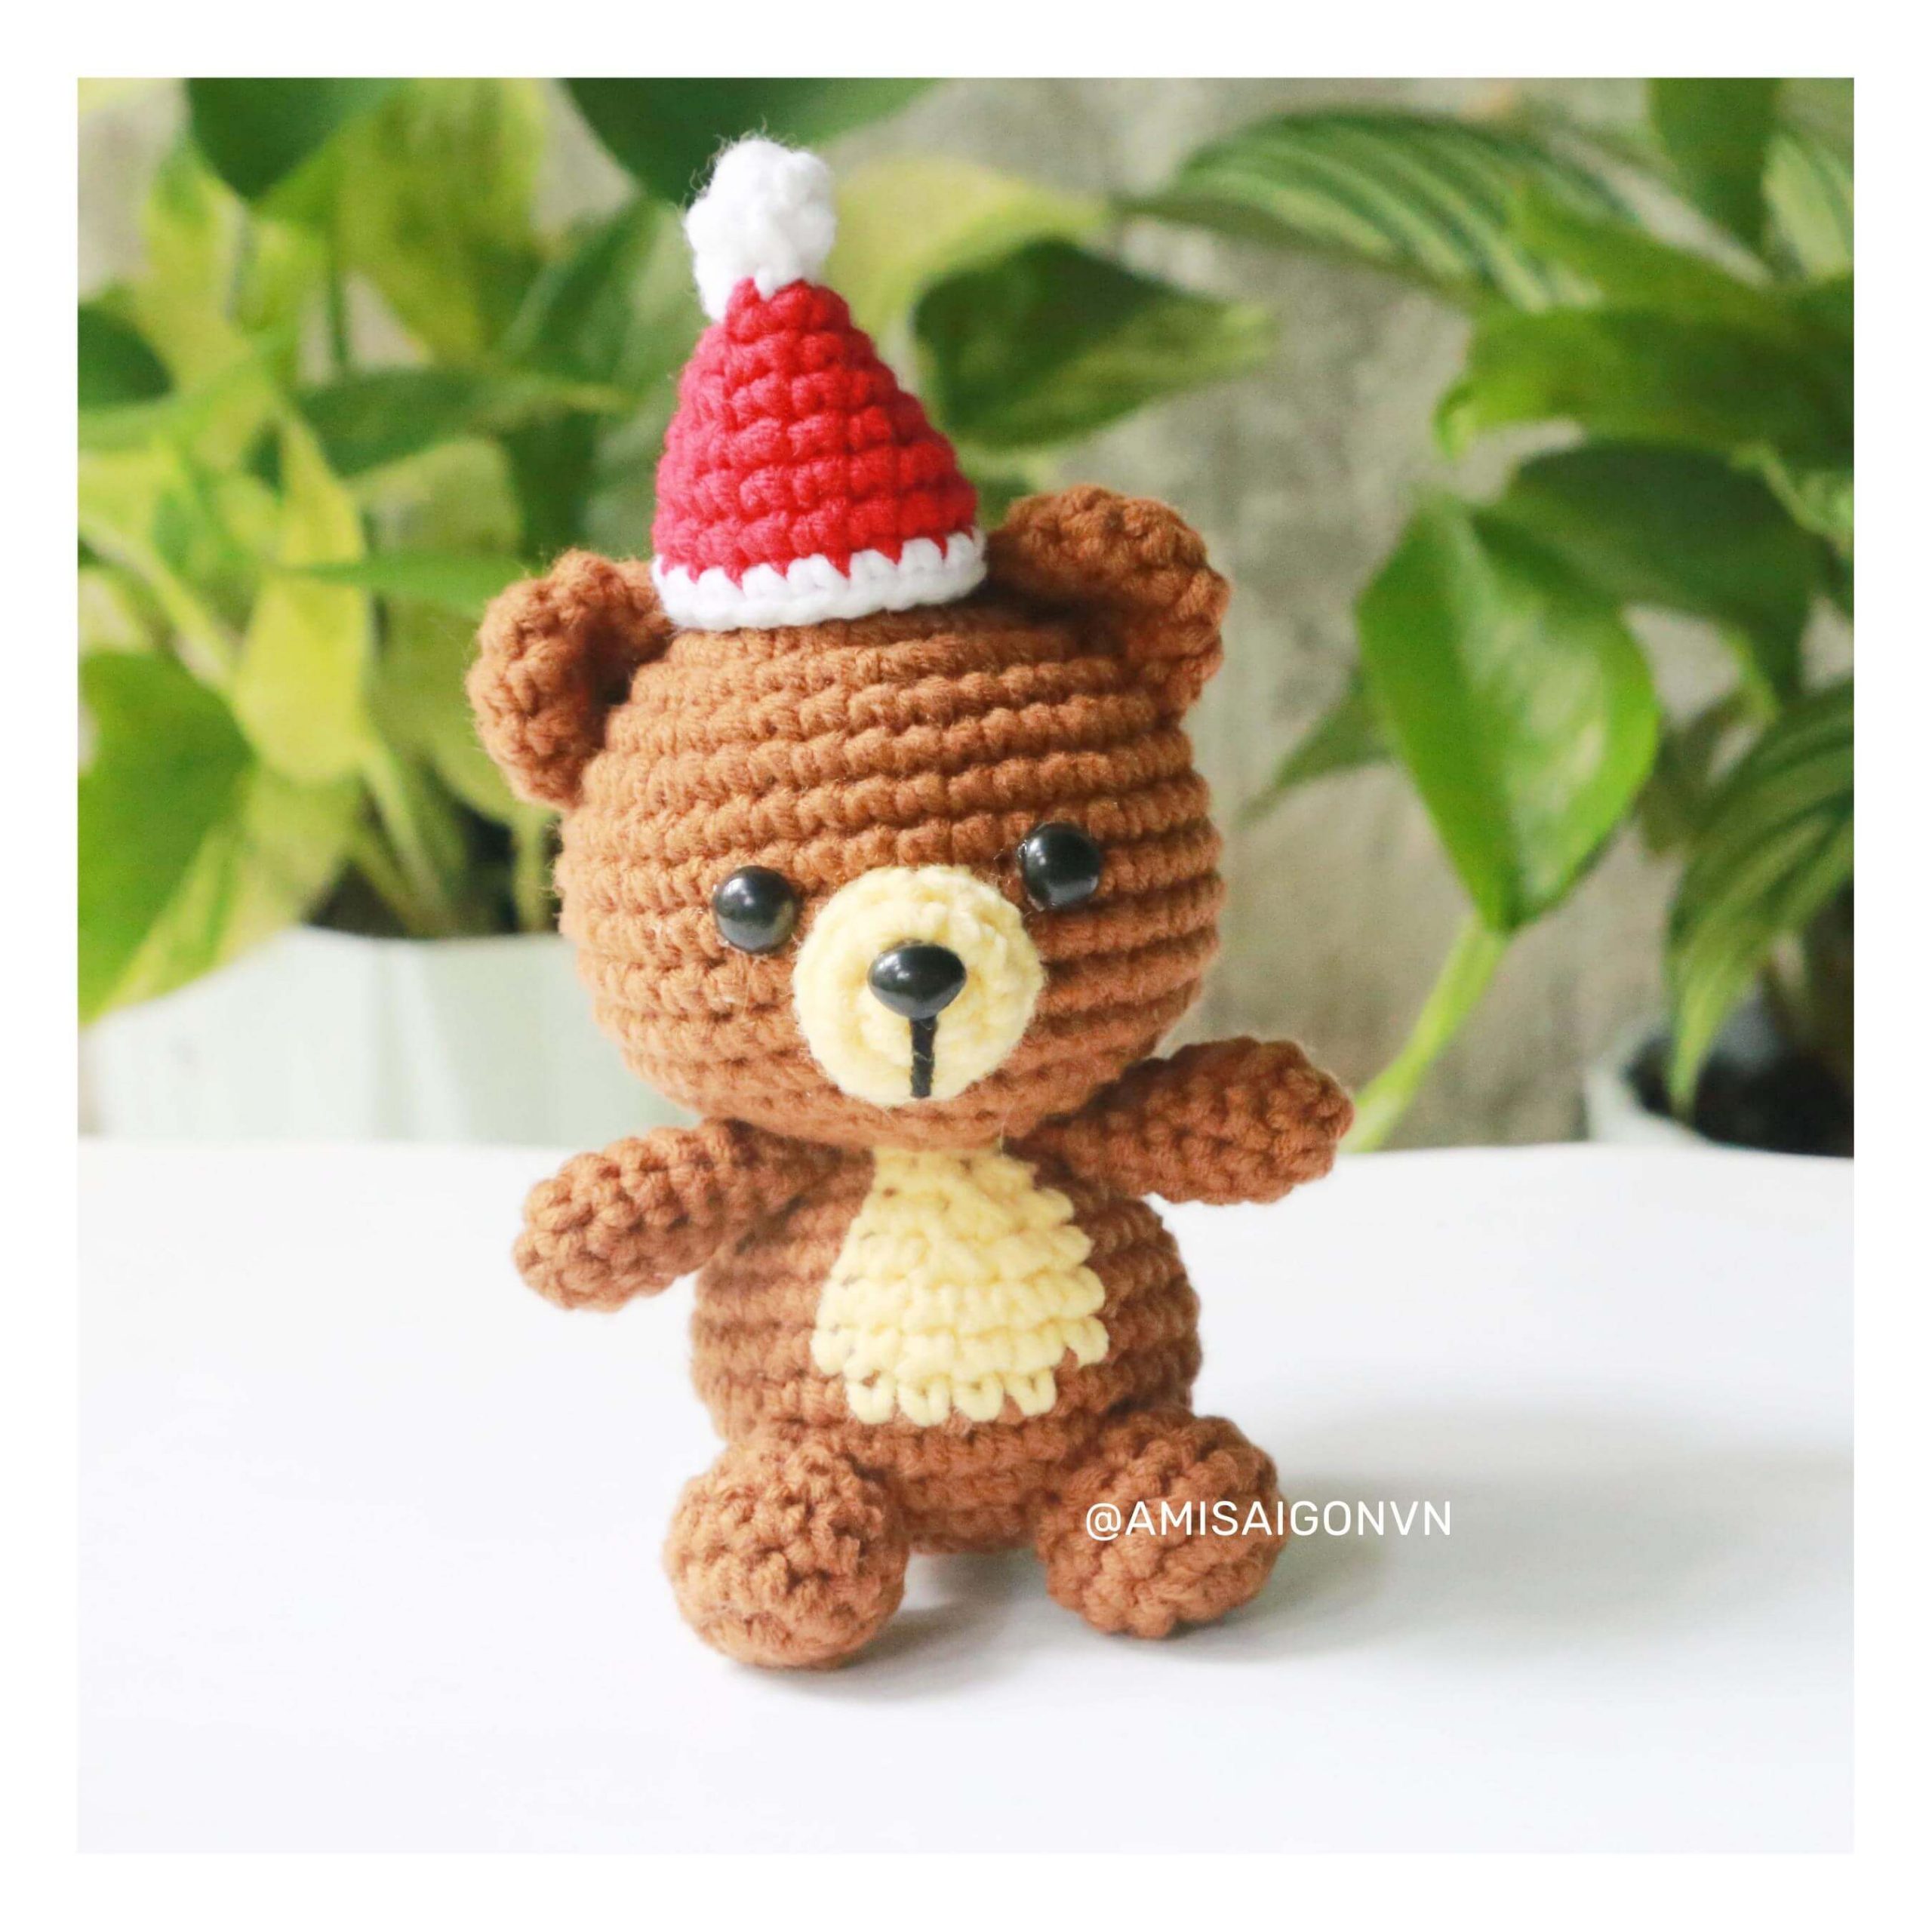 teddy-bear-amigurumi-crochet-pattern-by-amisaigo (6)